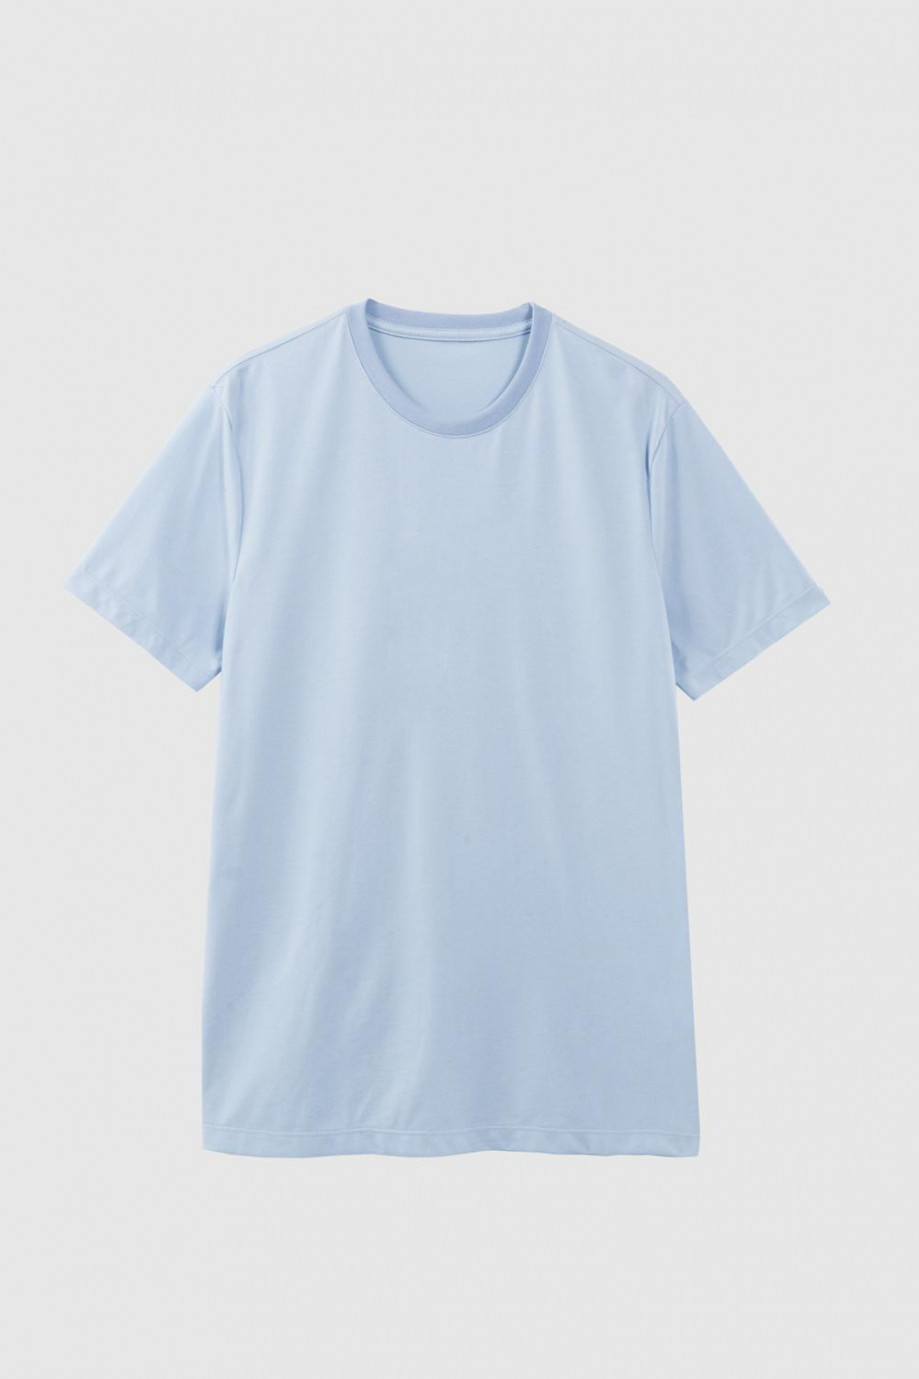 Camiseta azul clara cuello redondo con texto blanco en espalda